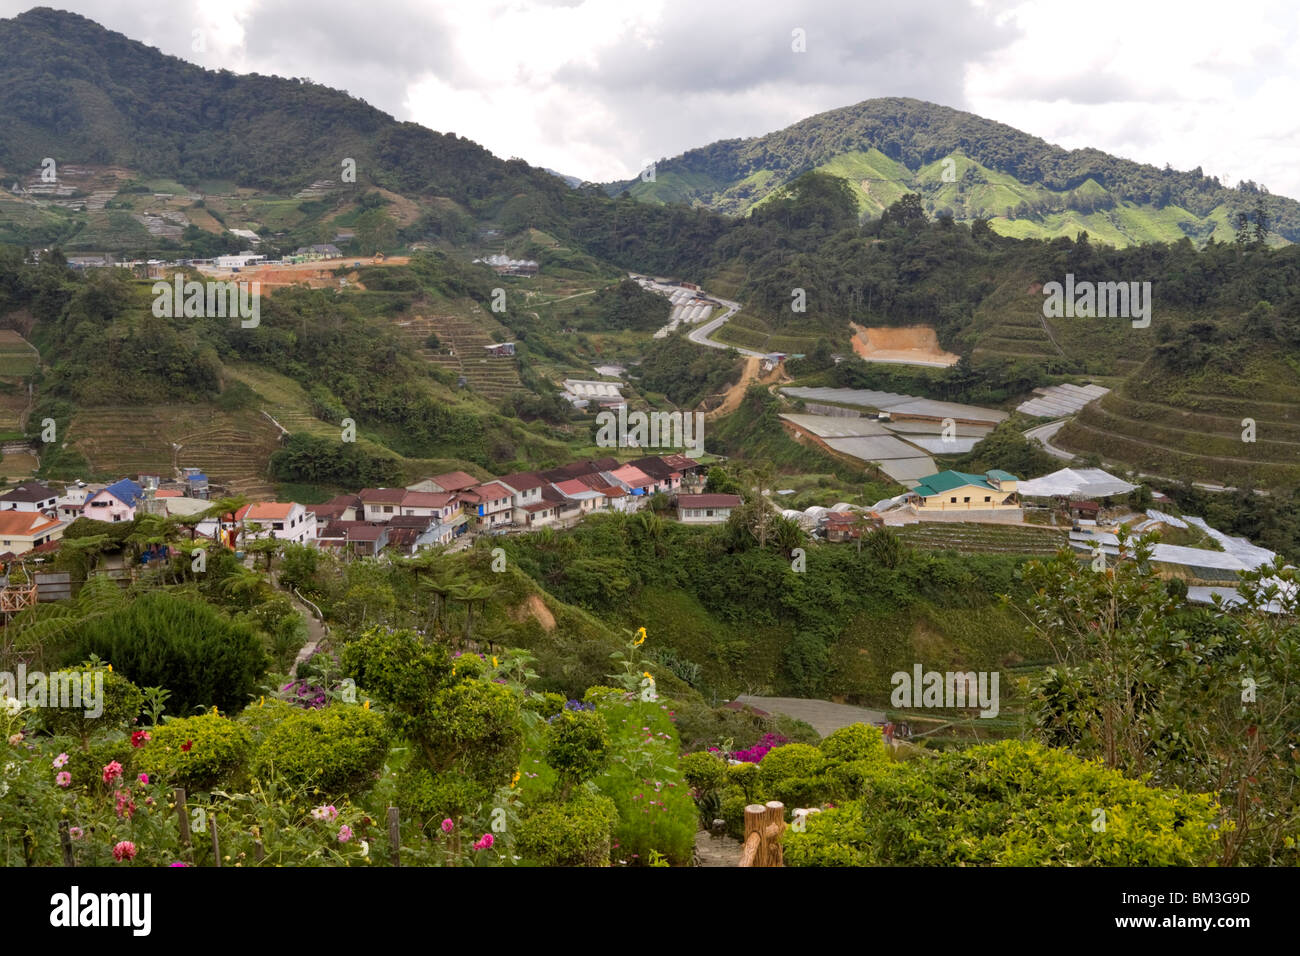 Il villaggio della valle delle rose vicino Brinchang, Malaysia. Foto Stock